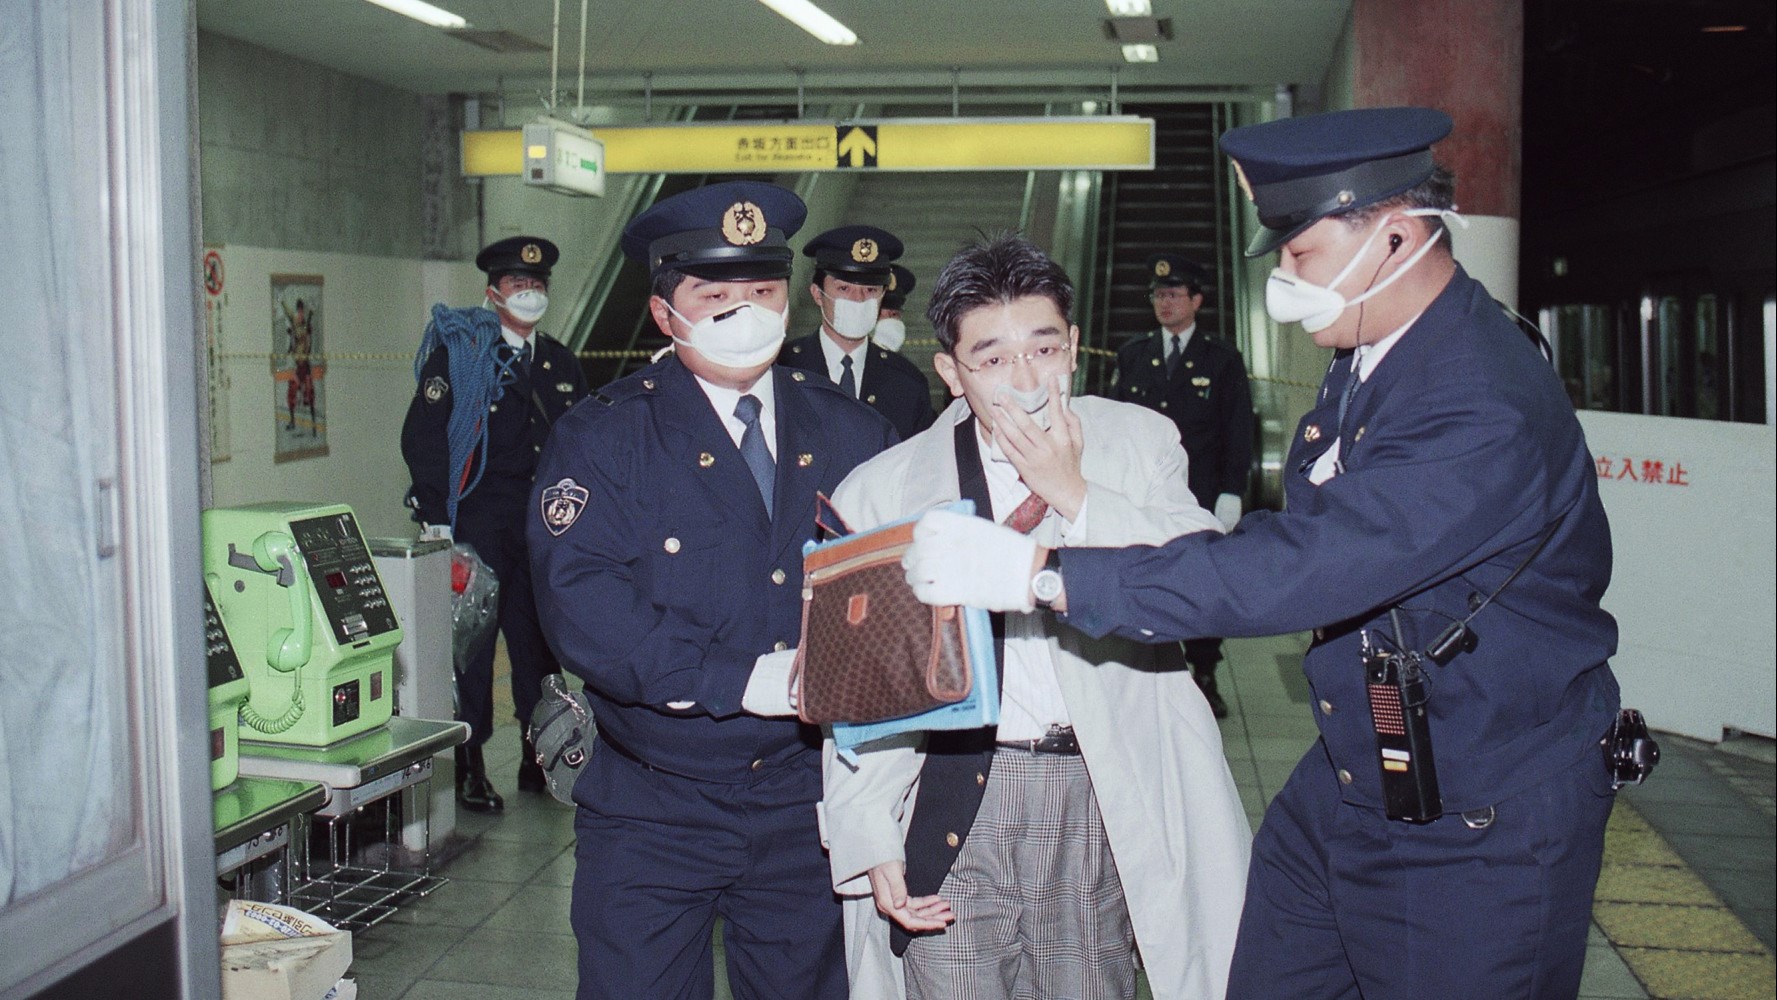 Ο γκουρού και άλλα έξι πρώην μέλη της σέκτας «Ομ Σινρικιό», εκτελέστηκαν δι’ απαγχονισμού – Ήταν υπεύθυνοι για την επίθεση στο μετρό του Τόκιο το 1995